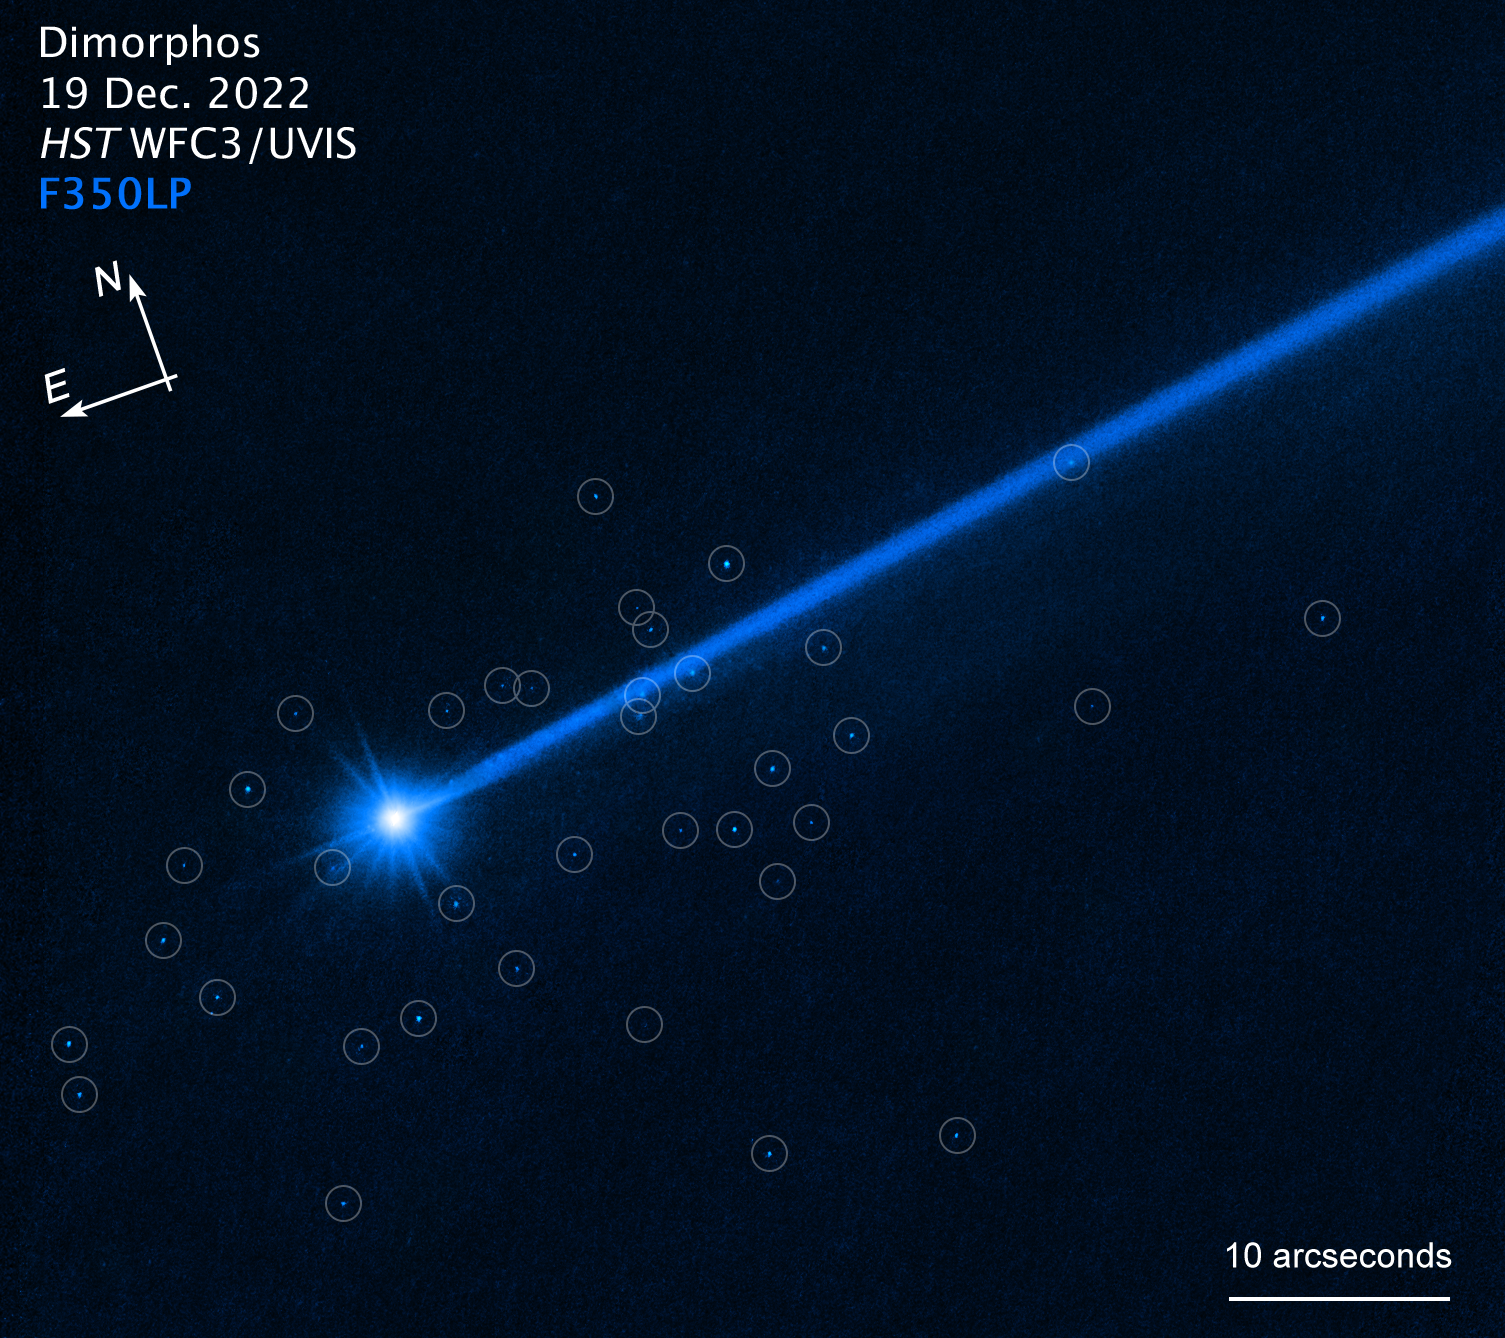 Asteroid biru terang dengan ekor panjang mengarah ke kanan atas.  Batu-batu biru kecil dilingkari di sekitar asteroid